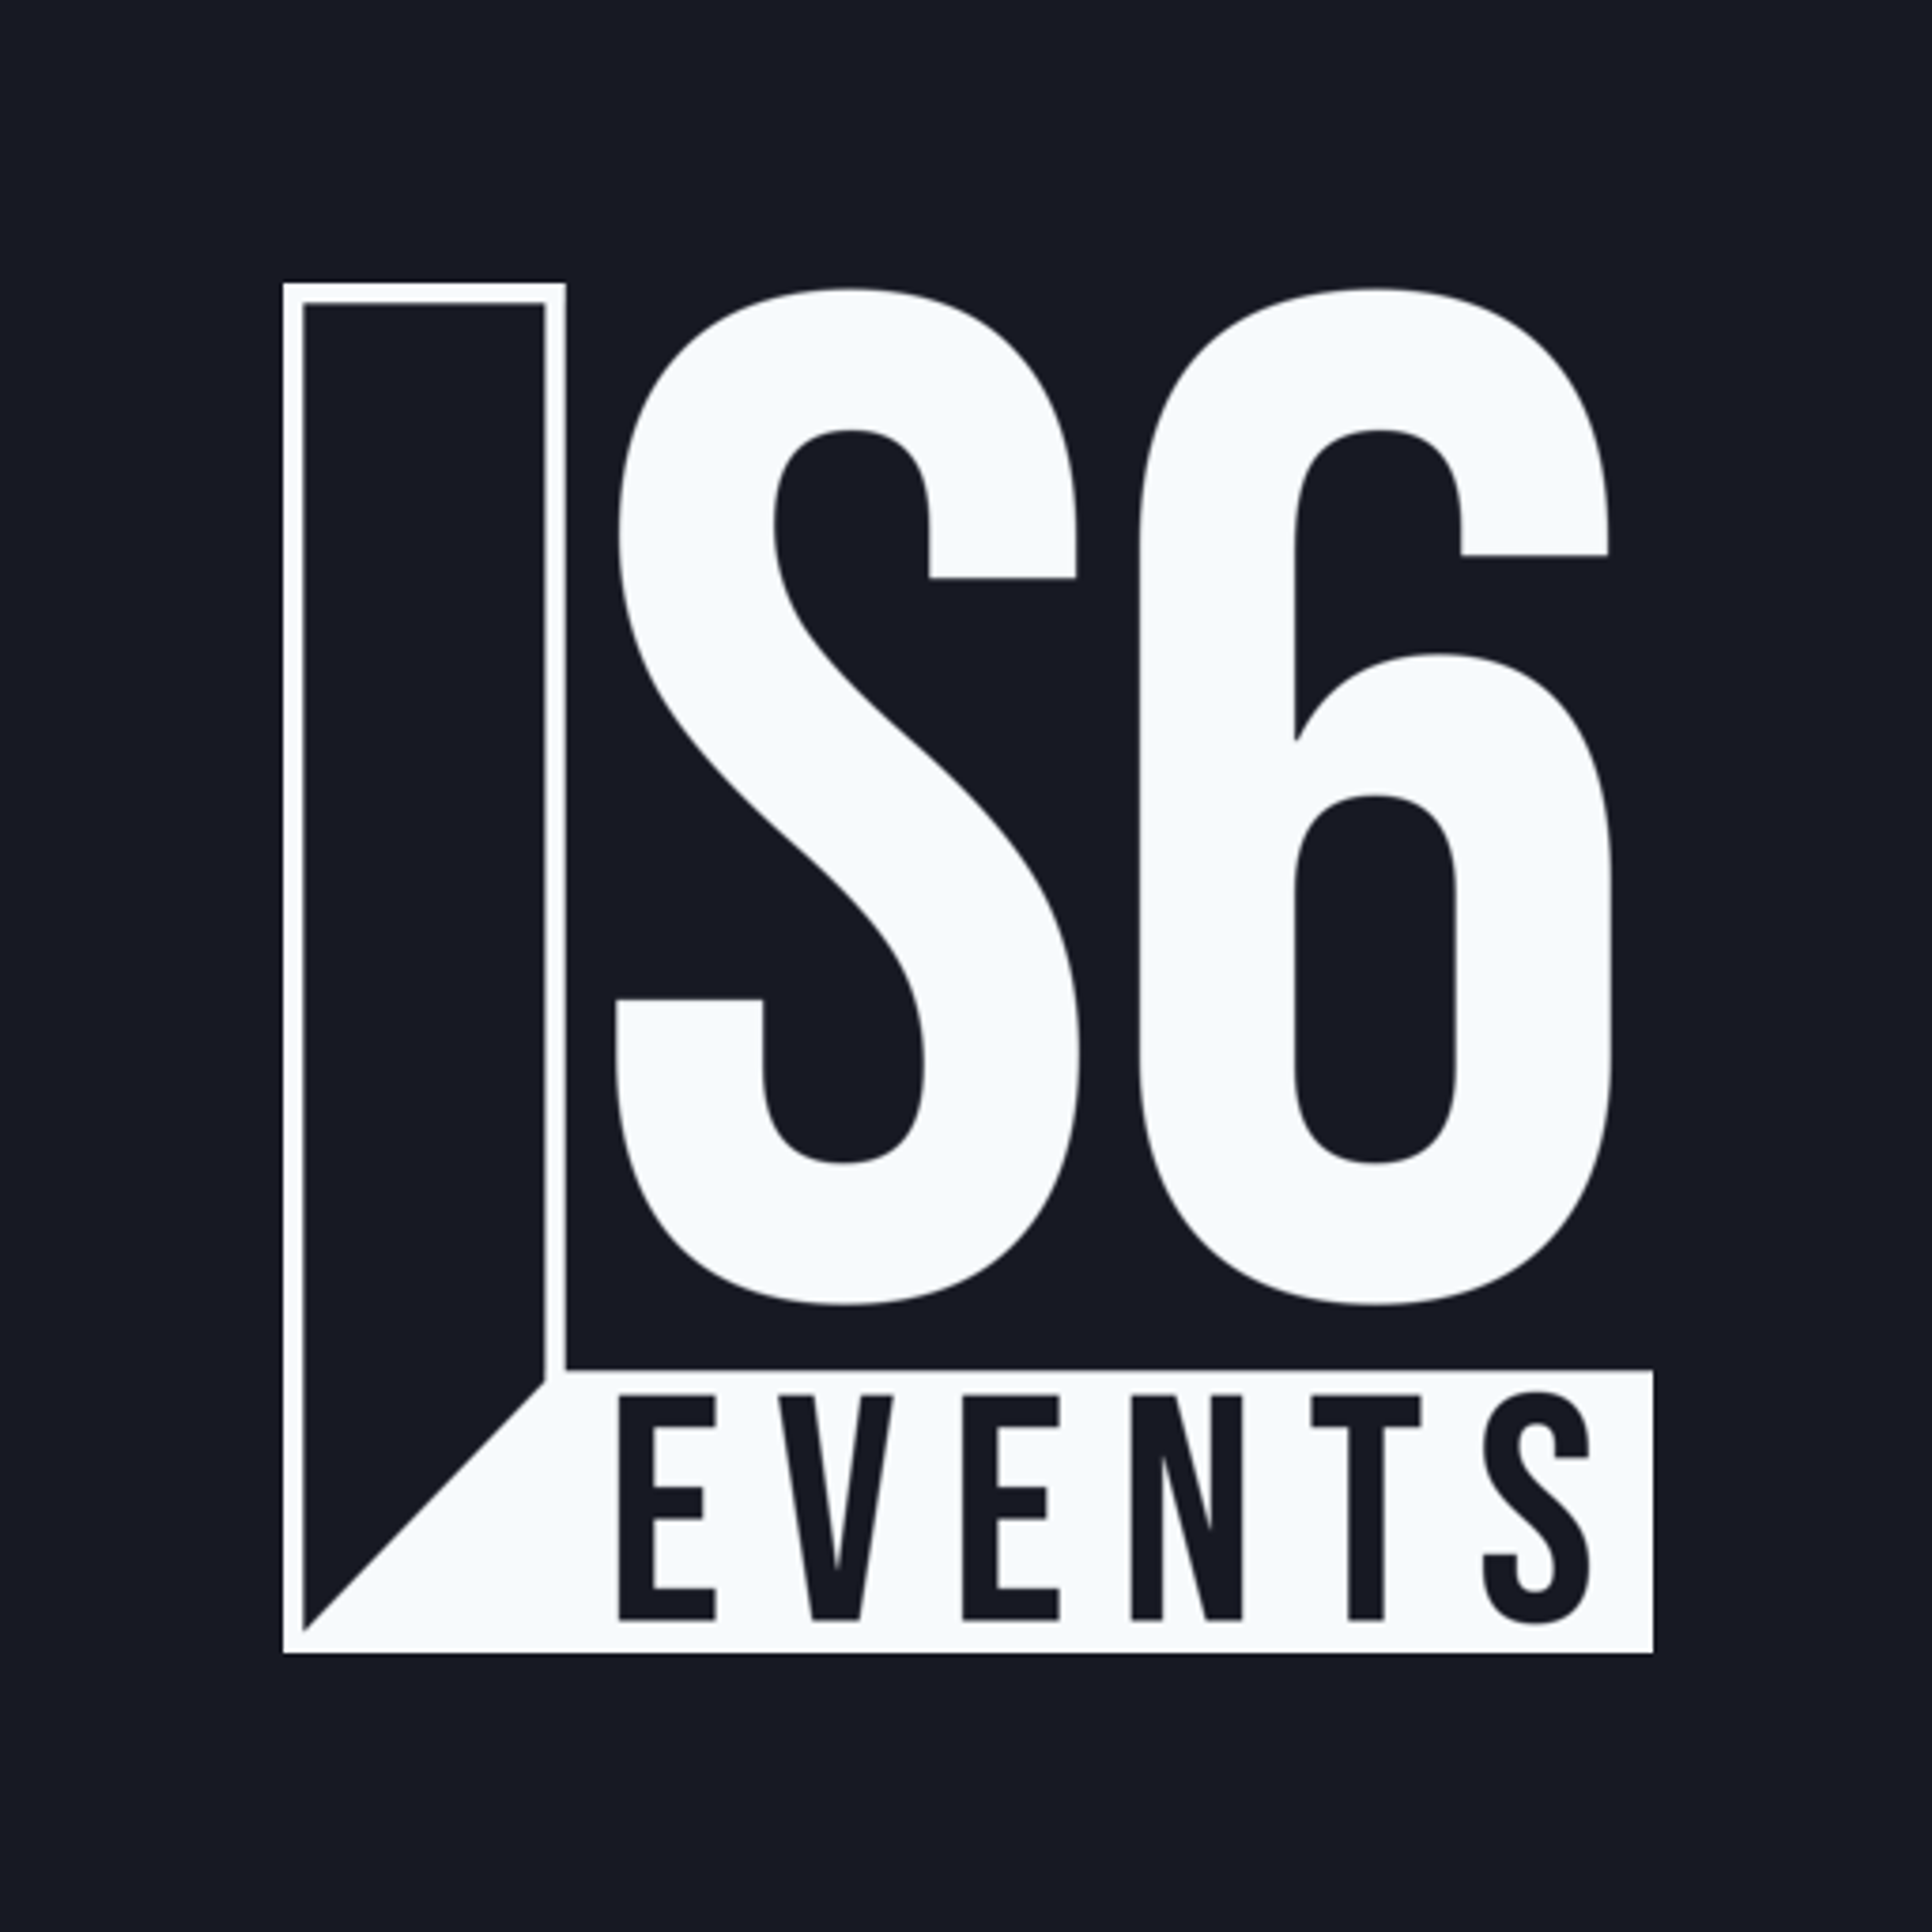 LS6 Events